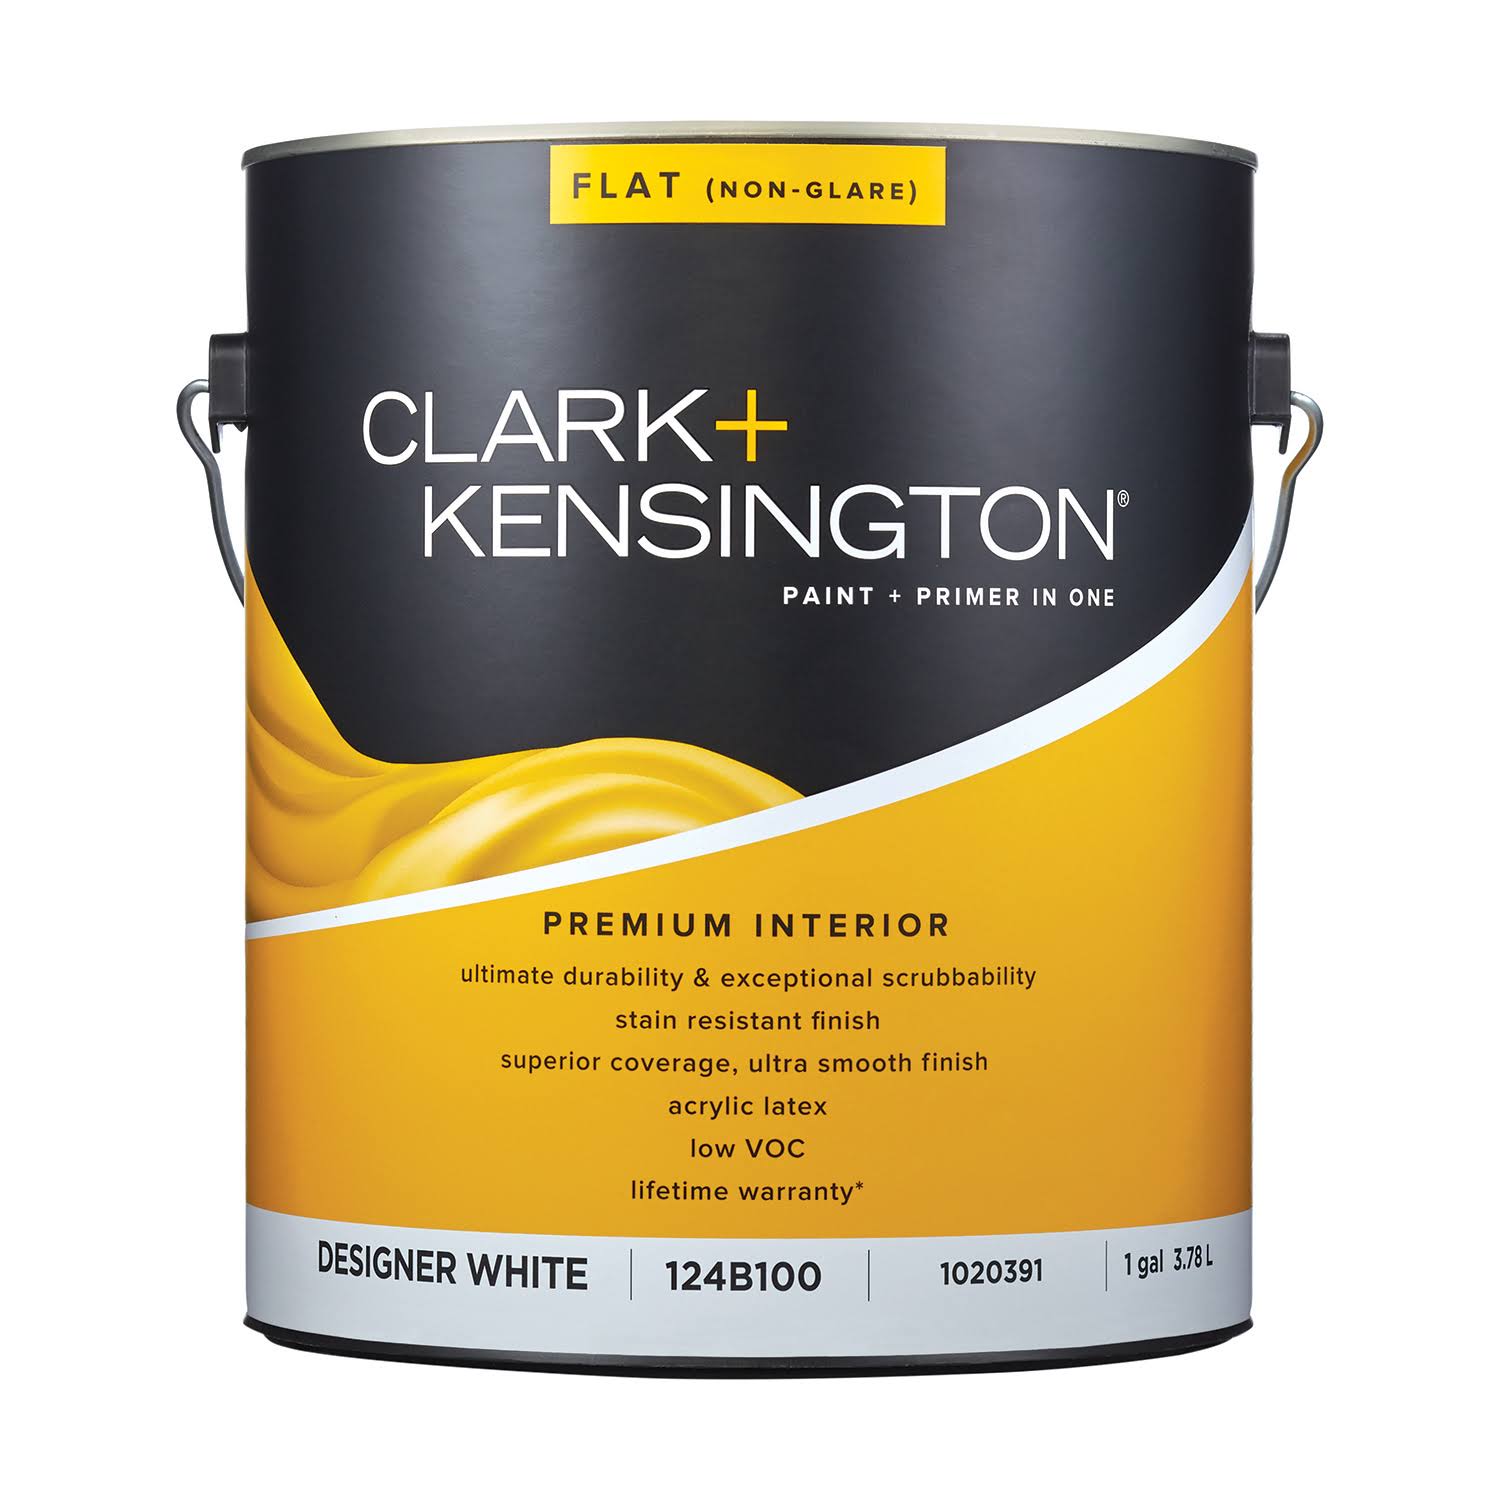 Clark+kensington Flat Designer White Premium Paint Interior 1 Gal